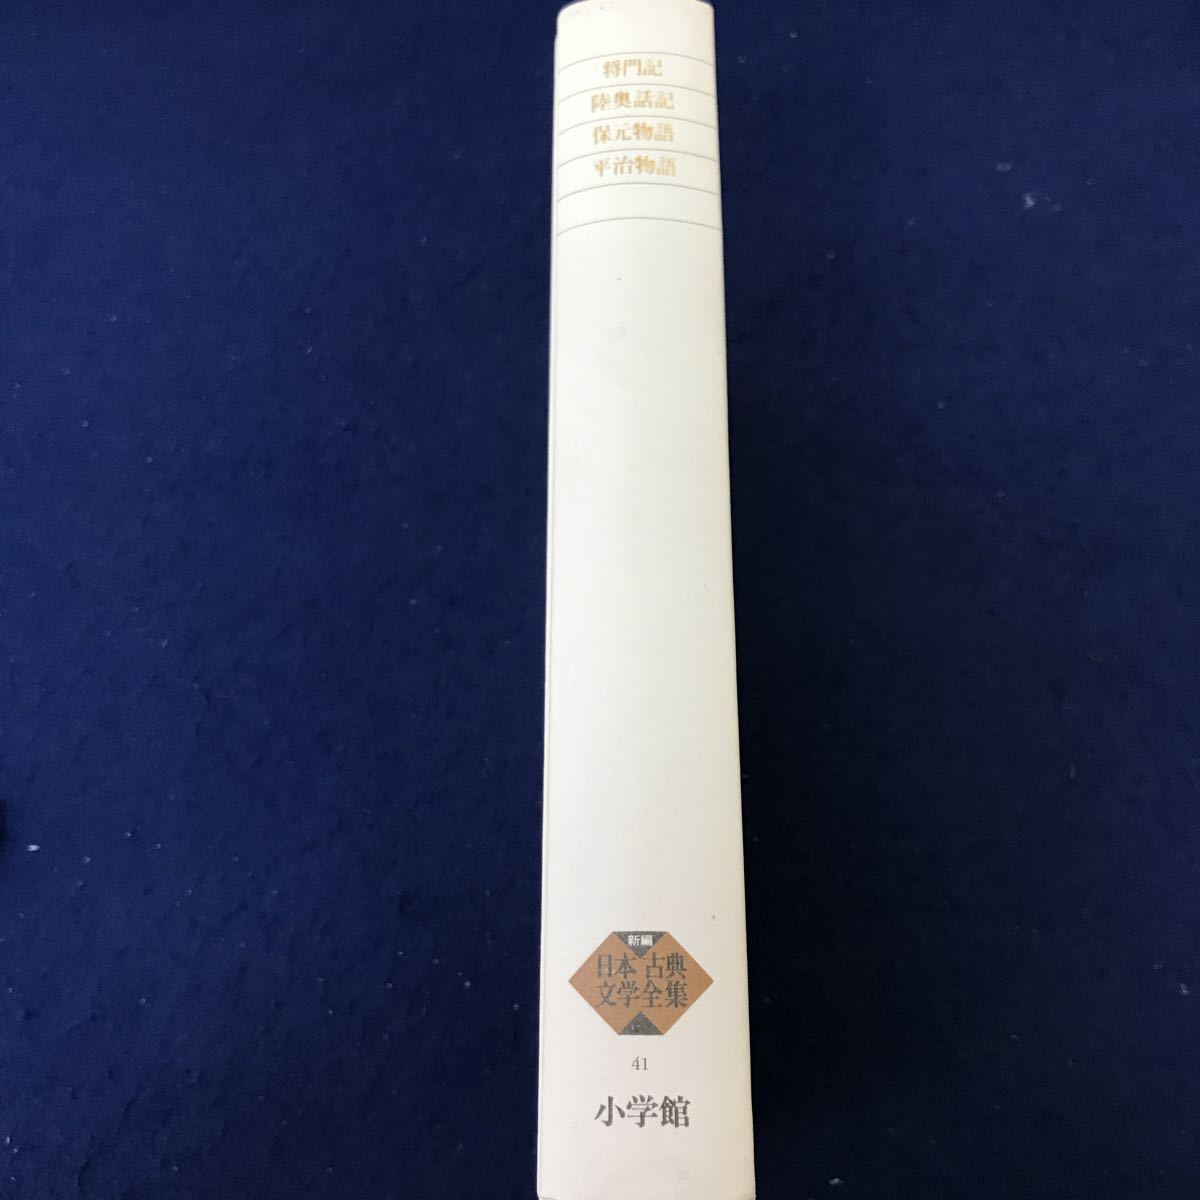 海外最新 平将門 新編日本古典文学全集41 G09-030 陸奥話記 小学館